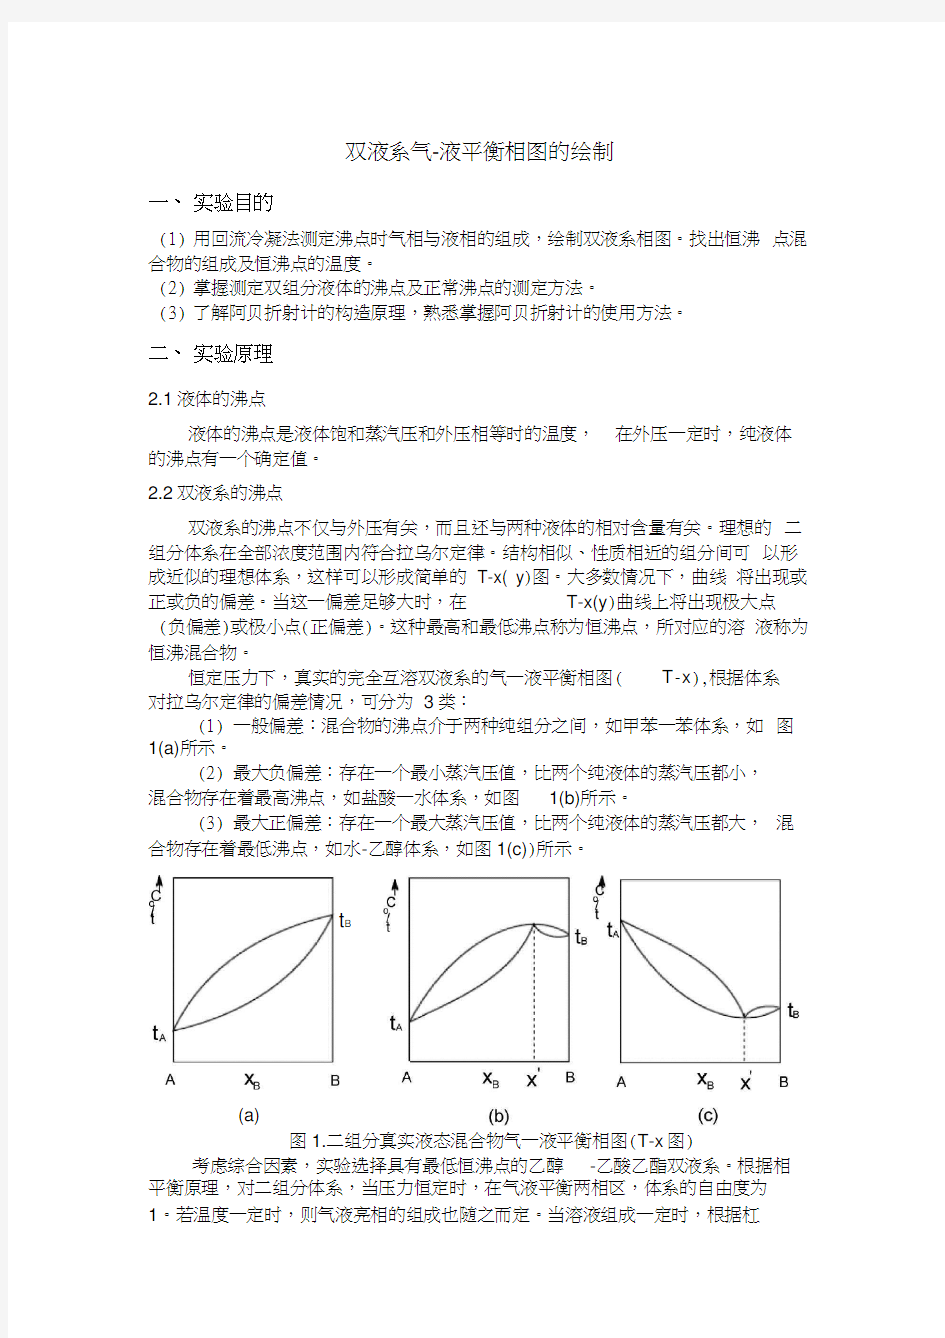 双液系气液平衡相图的绘制华南师范大学物化实验